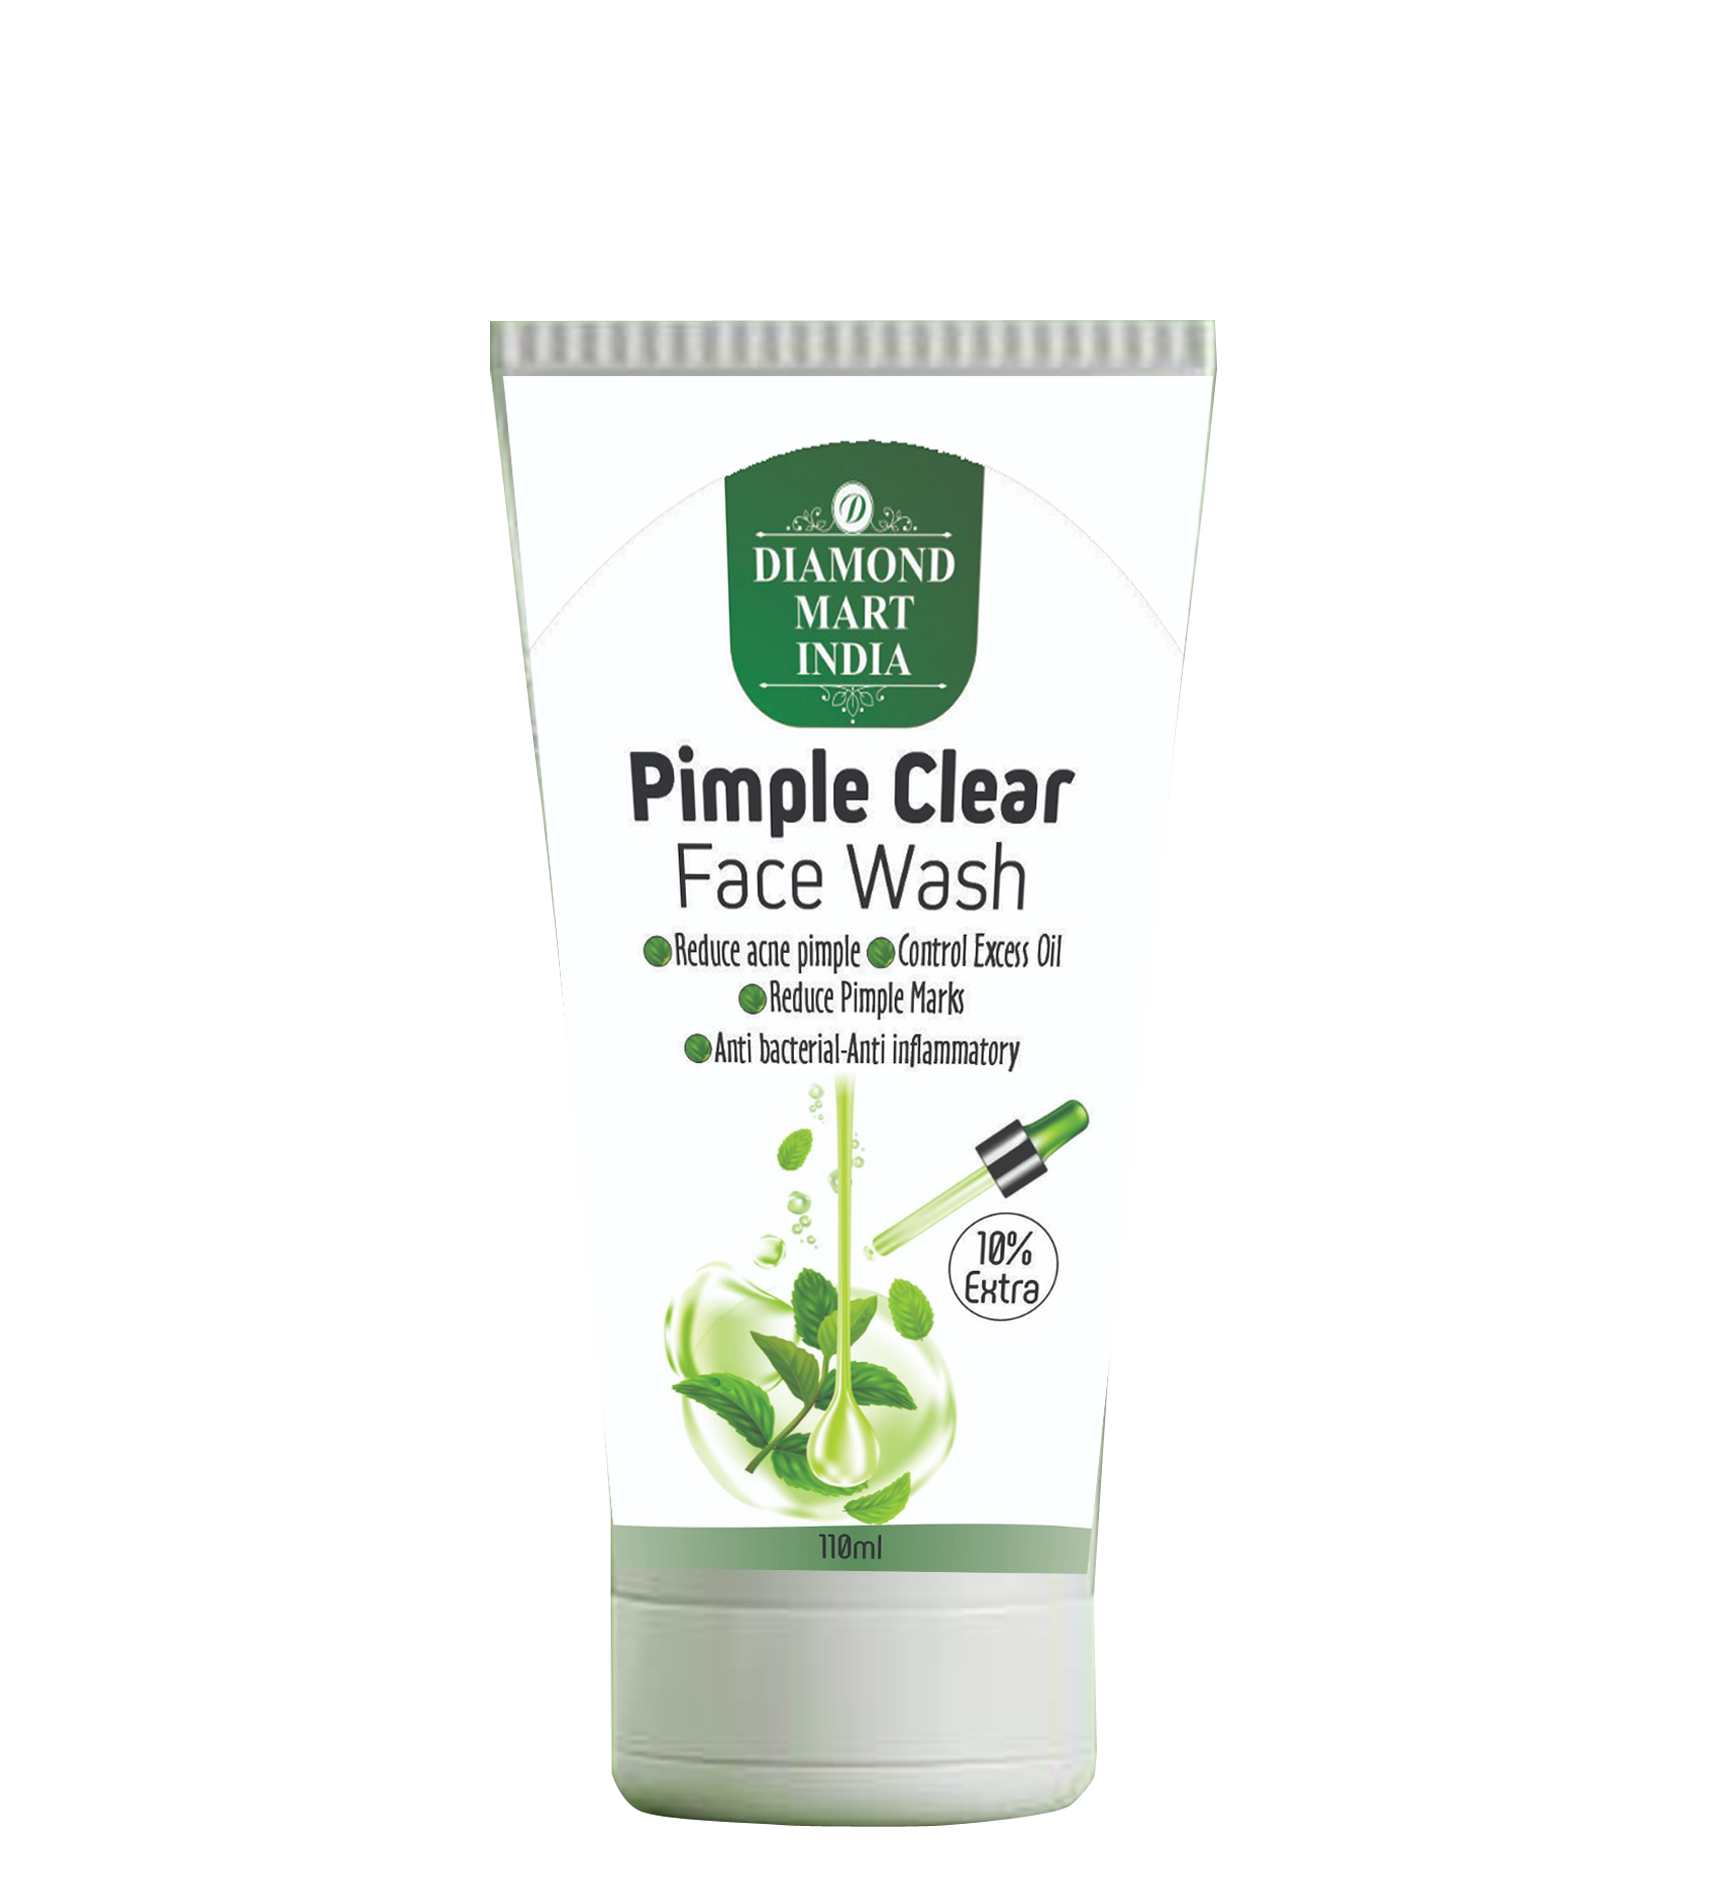 Pimple Clear Facewash